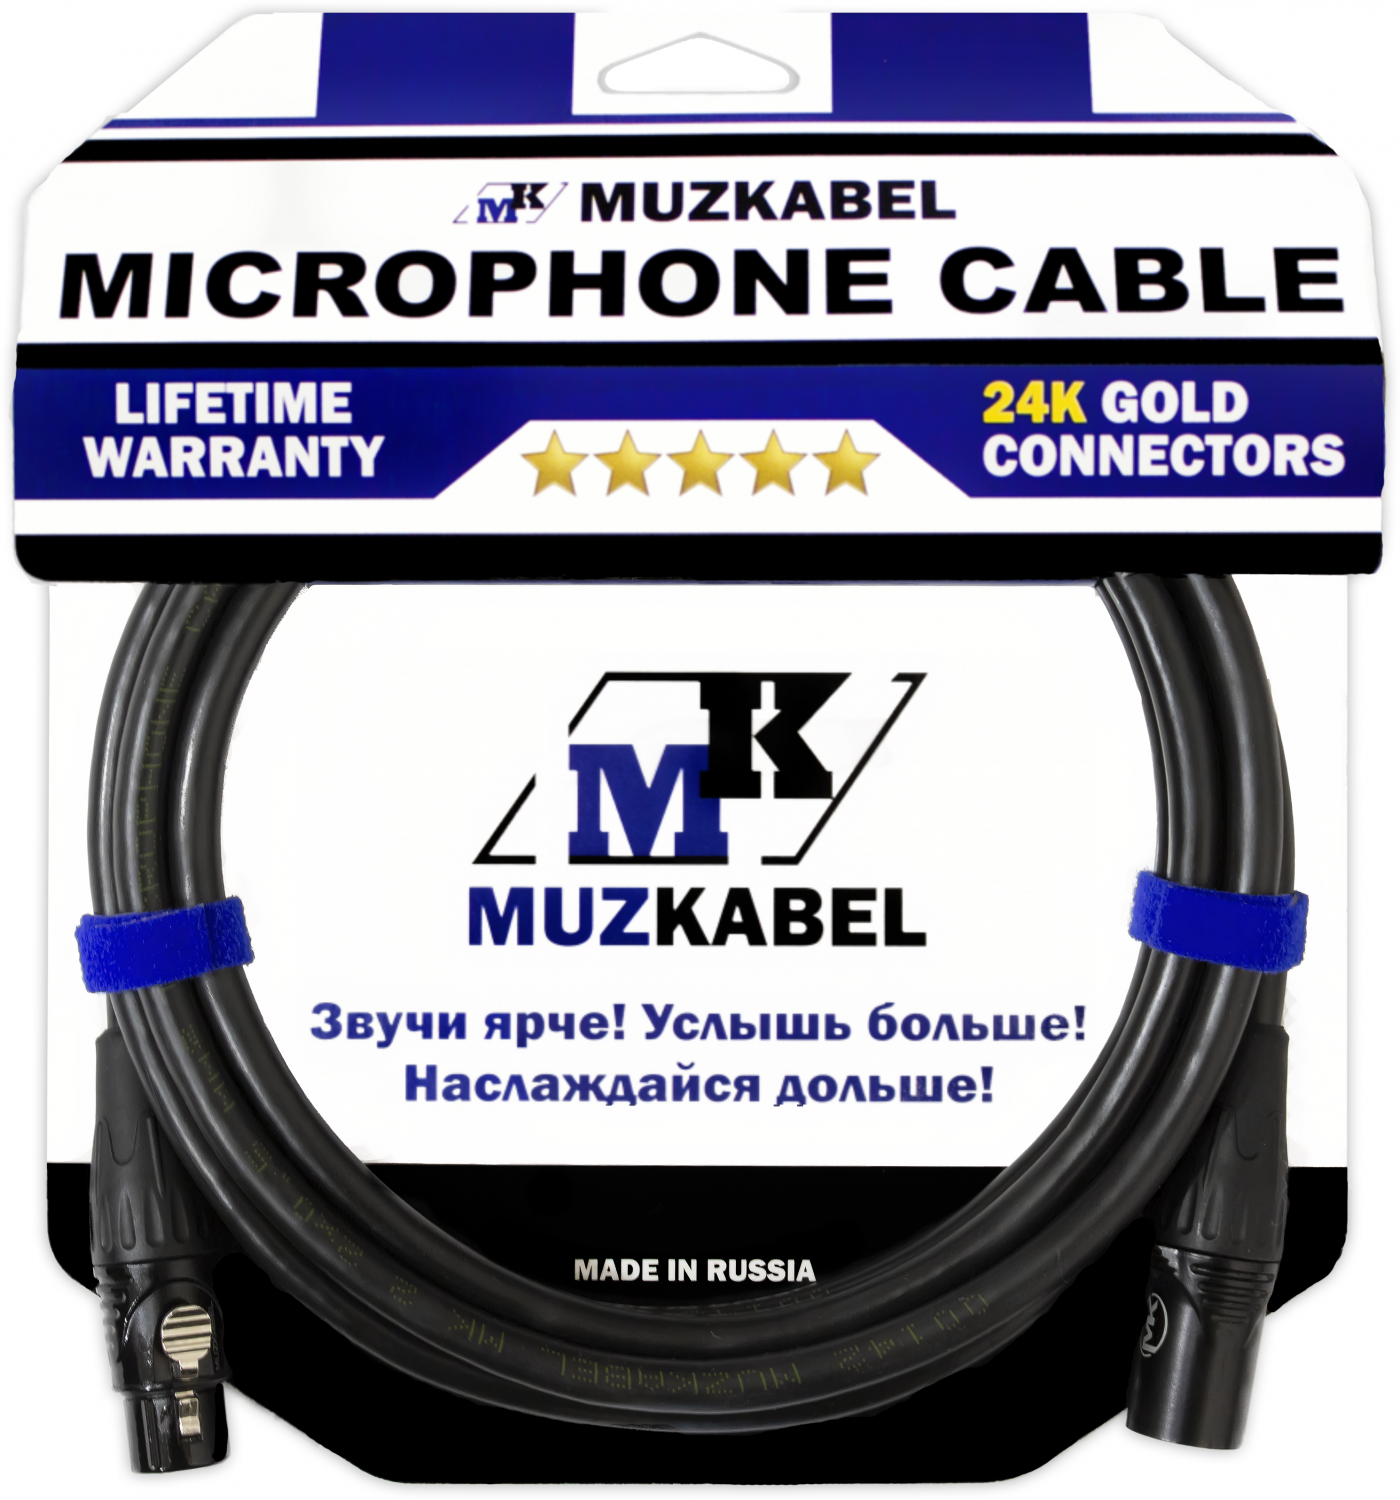 Микрофонный кабель MUZKABEL MBXMK2 - 6 метров, XLR - XLR